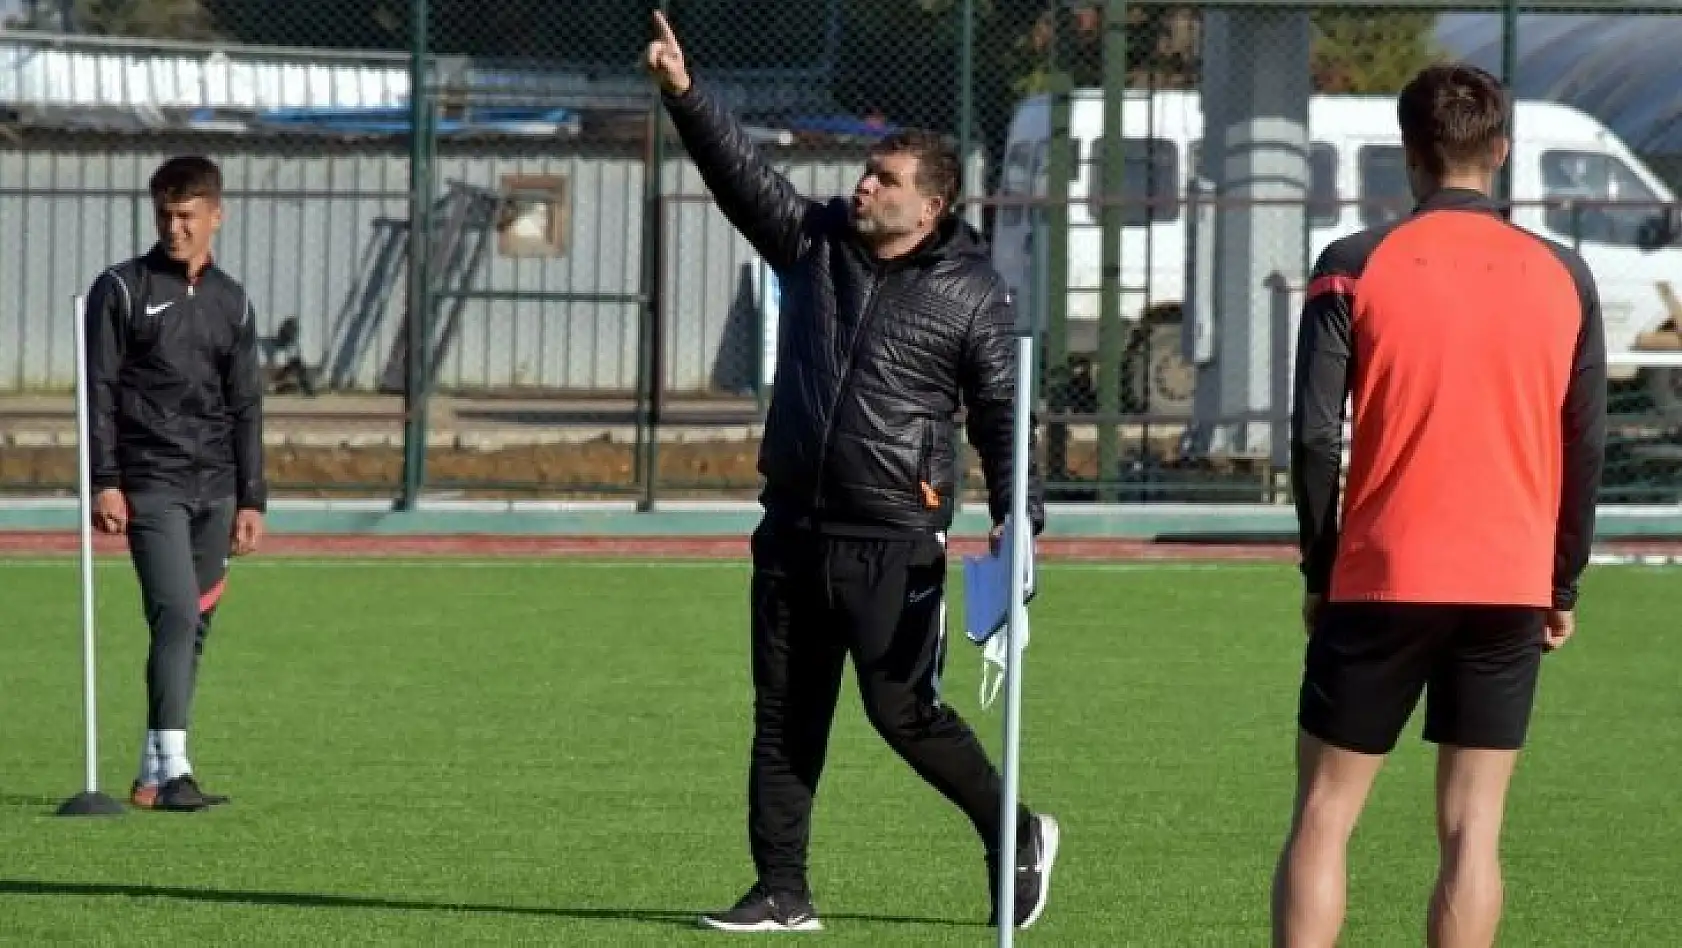 Aliağaspor FK, lig öncesi hazırlıklarını sürdürüyor